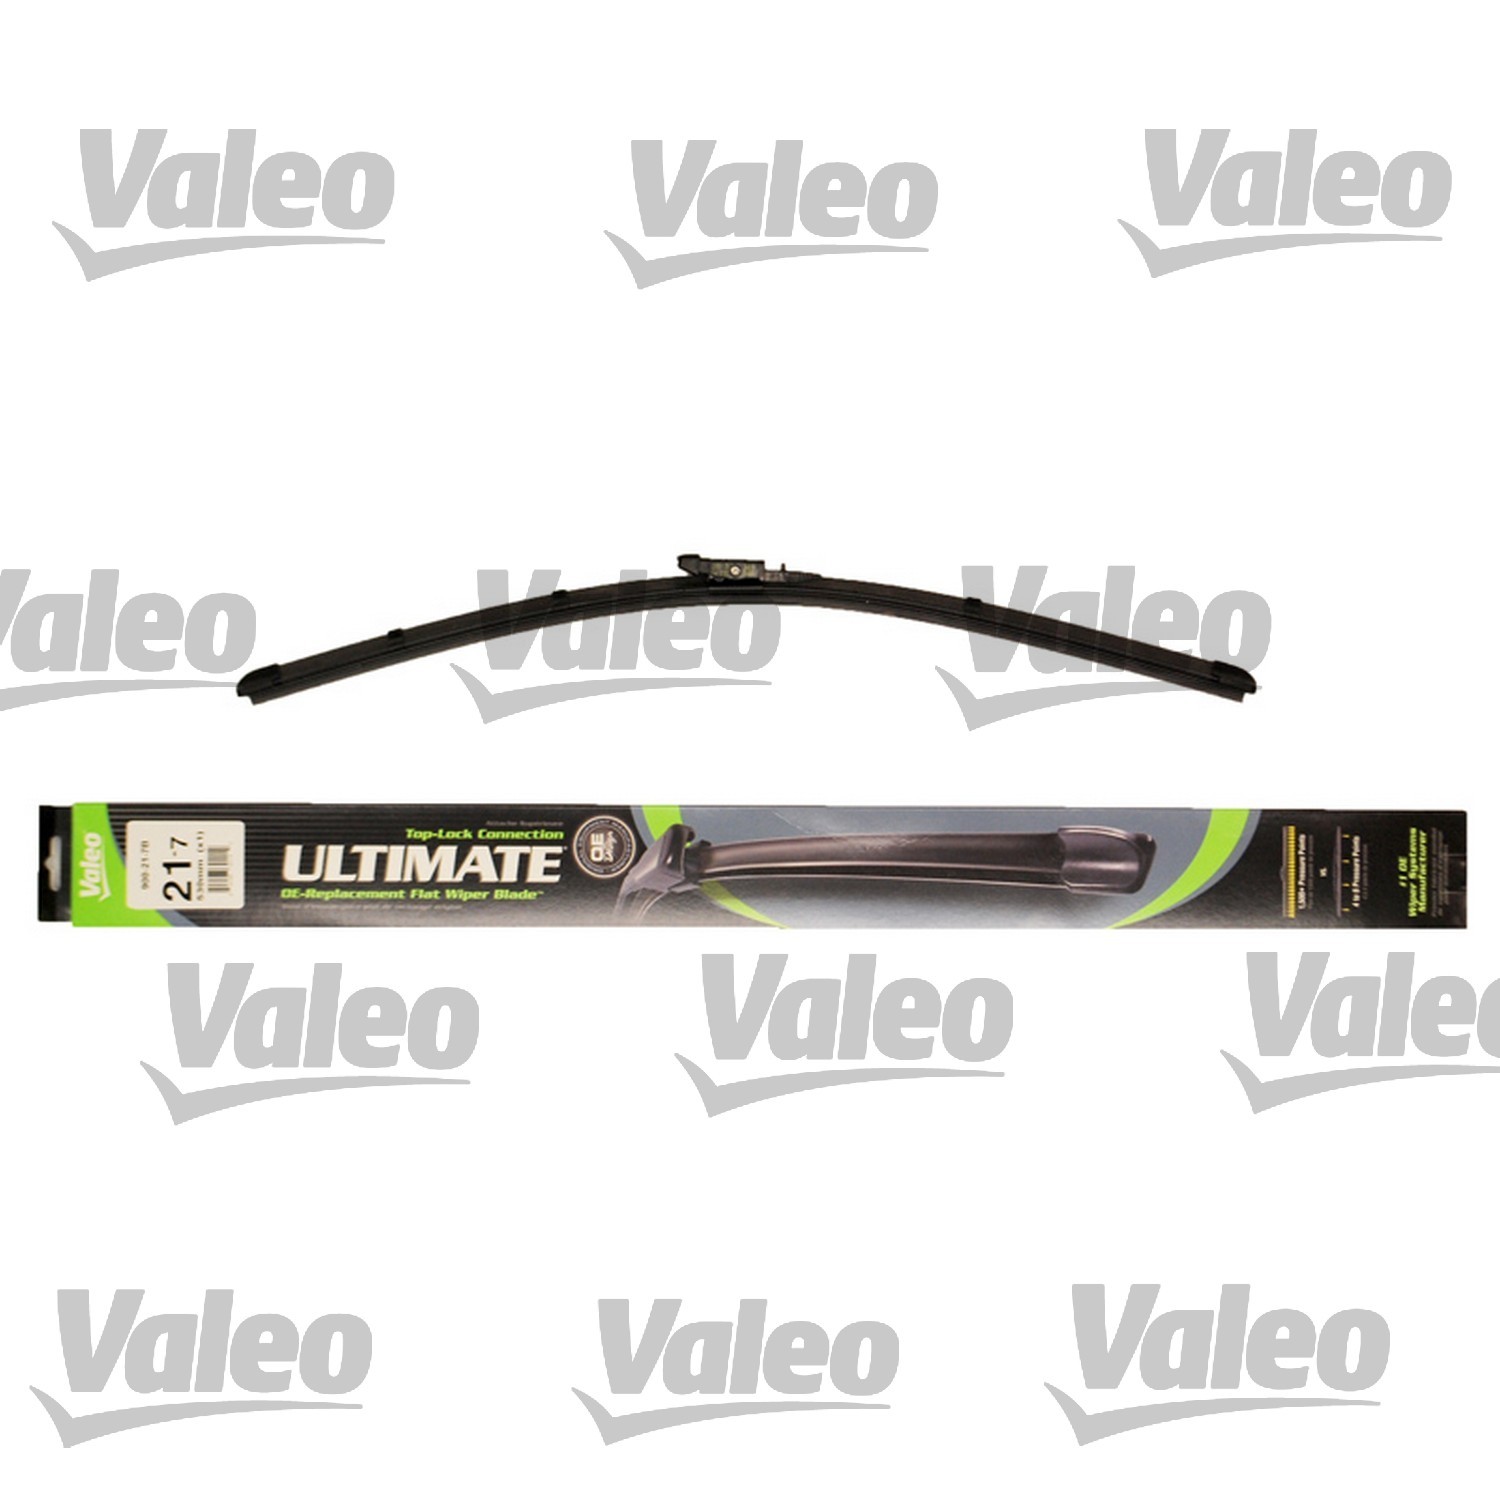 VALEO - Ultimate Wiper Blade Refill - VEO 900-21-7B